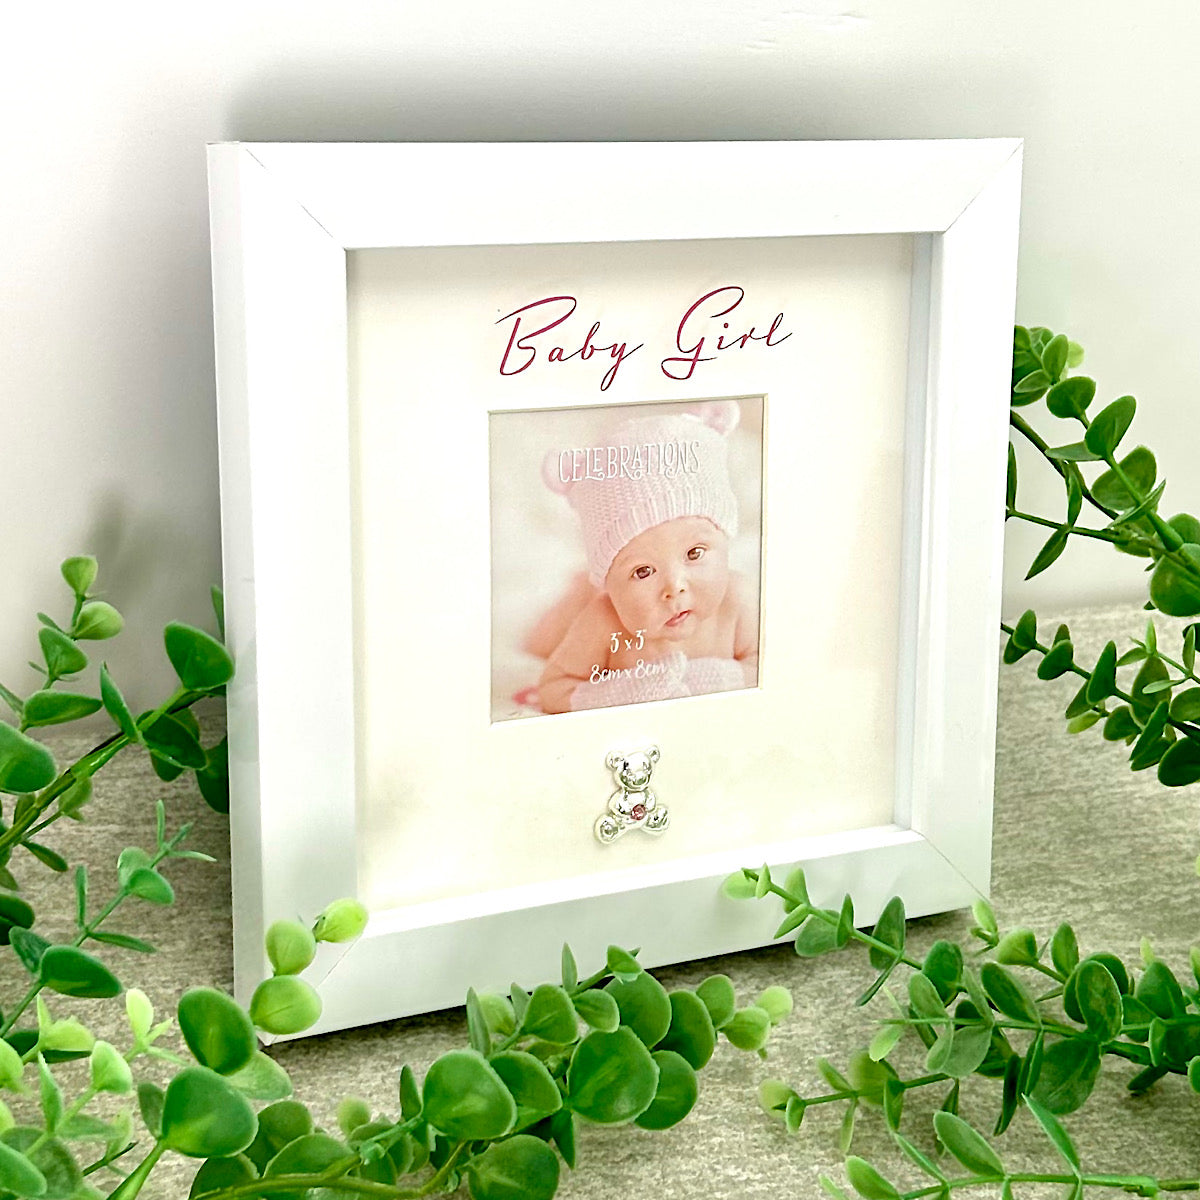 Baby Girl Box Frame